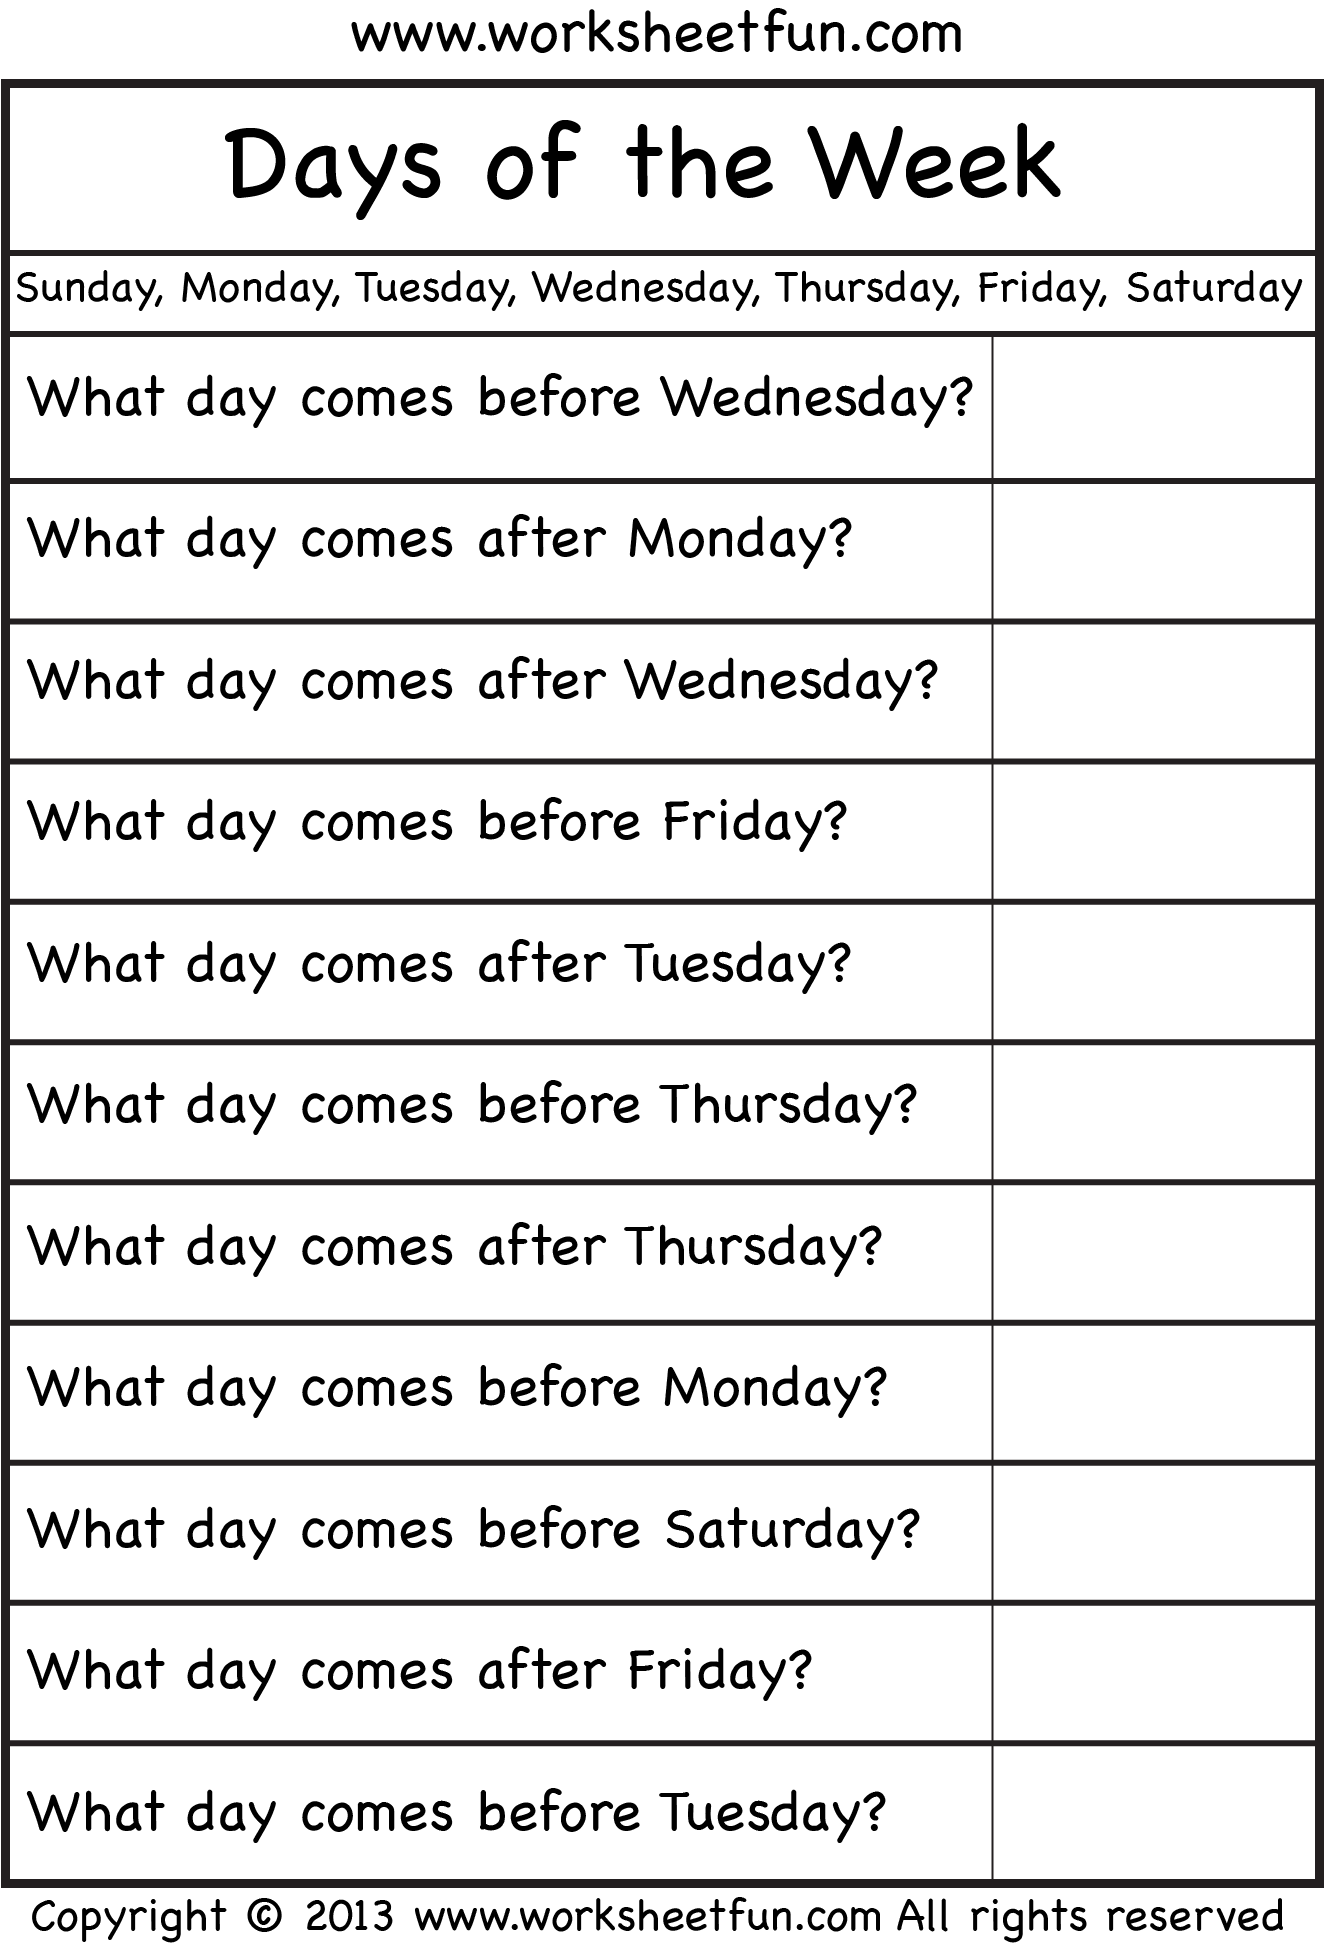 Days of the Week – Worksheet / FREE Printable Worksheets – Worksheetfun